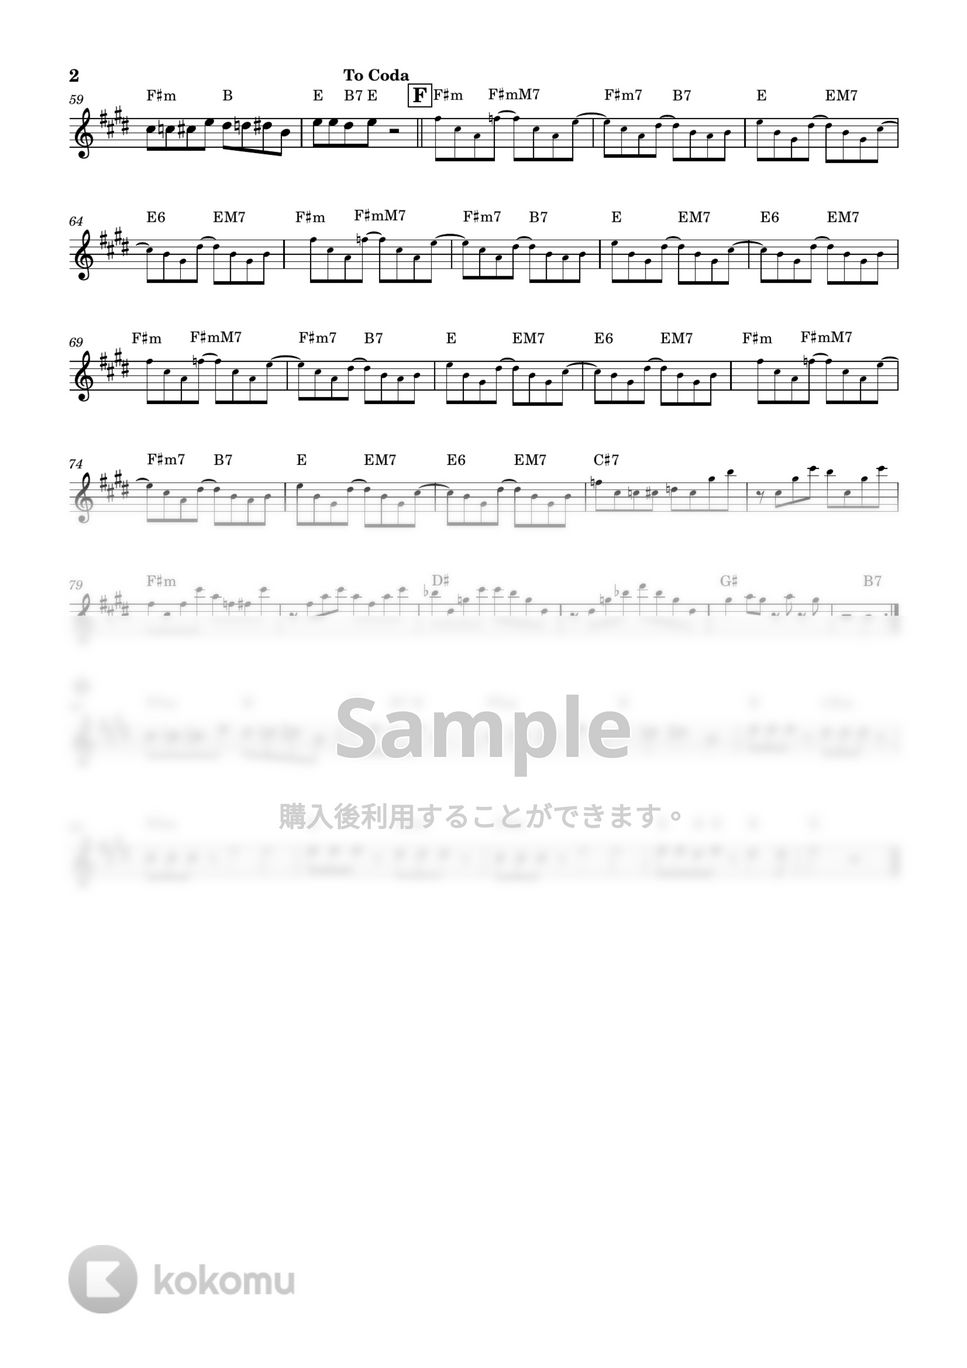 松谷祐子 - ラムのラブソング (うる星やつら、アルトサキソフォン、コード付き) by clacla-music